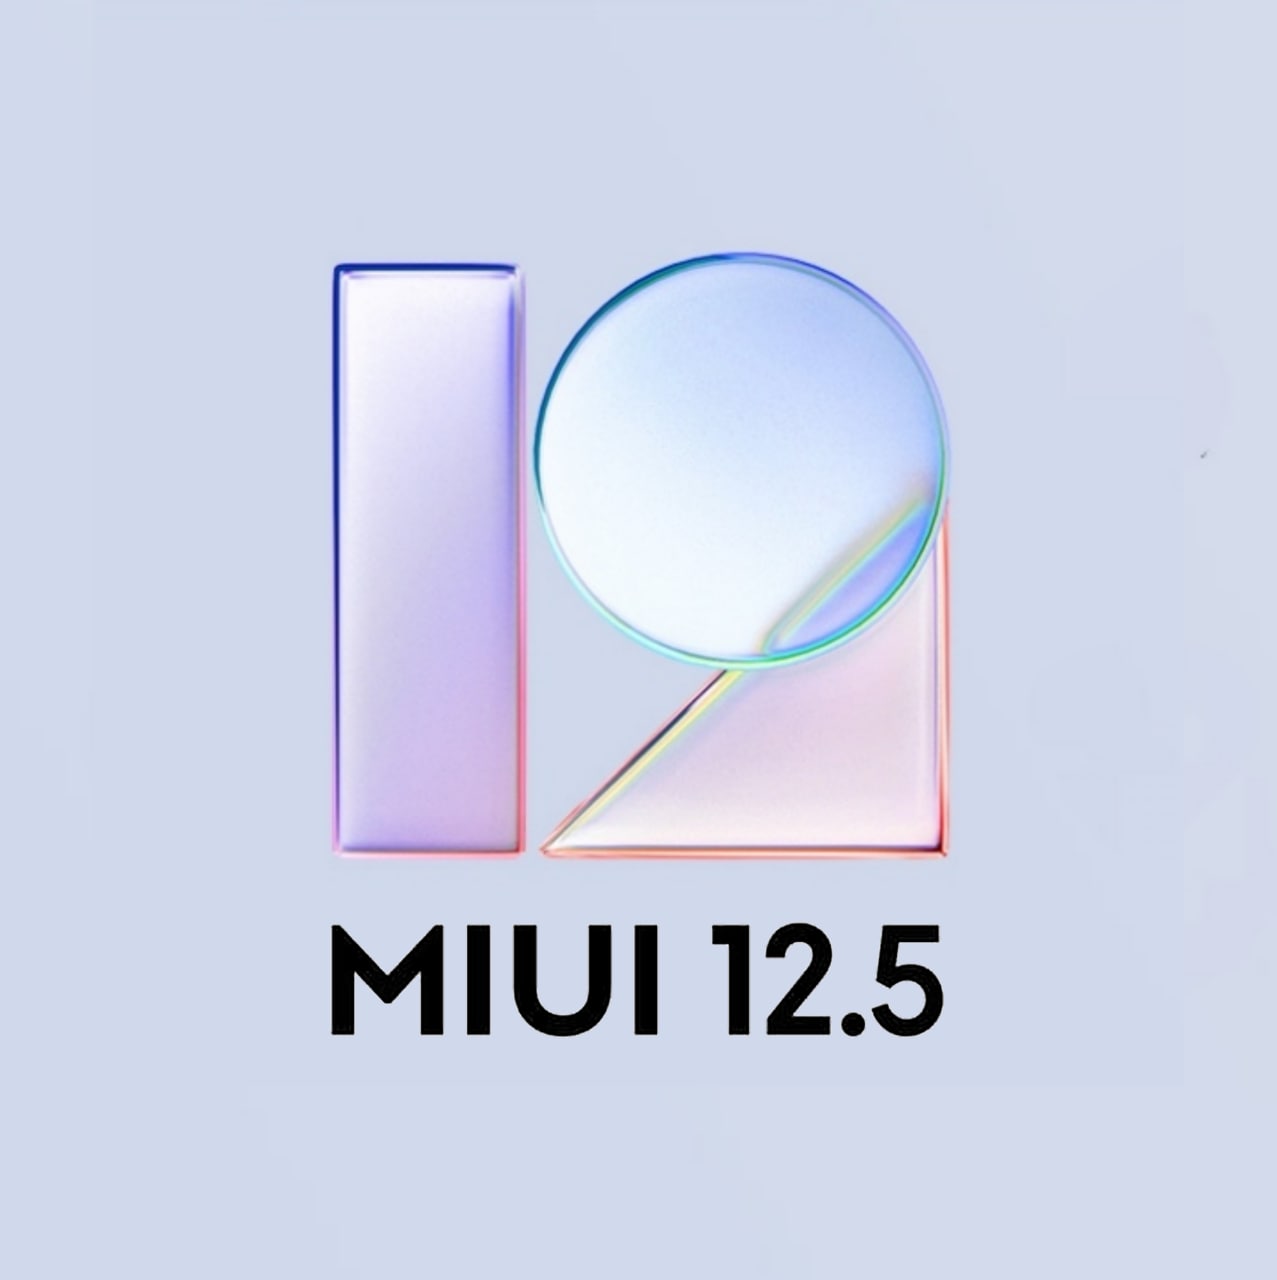 MIUI 12.5 update for the Mi 10 Ultra